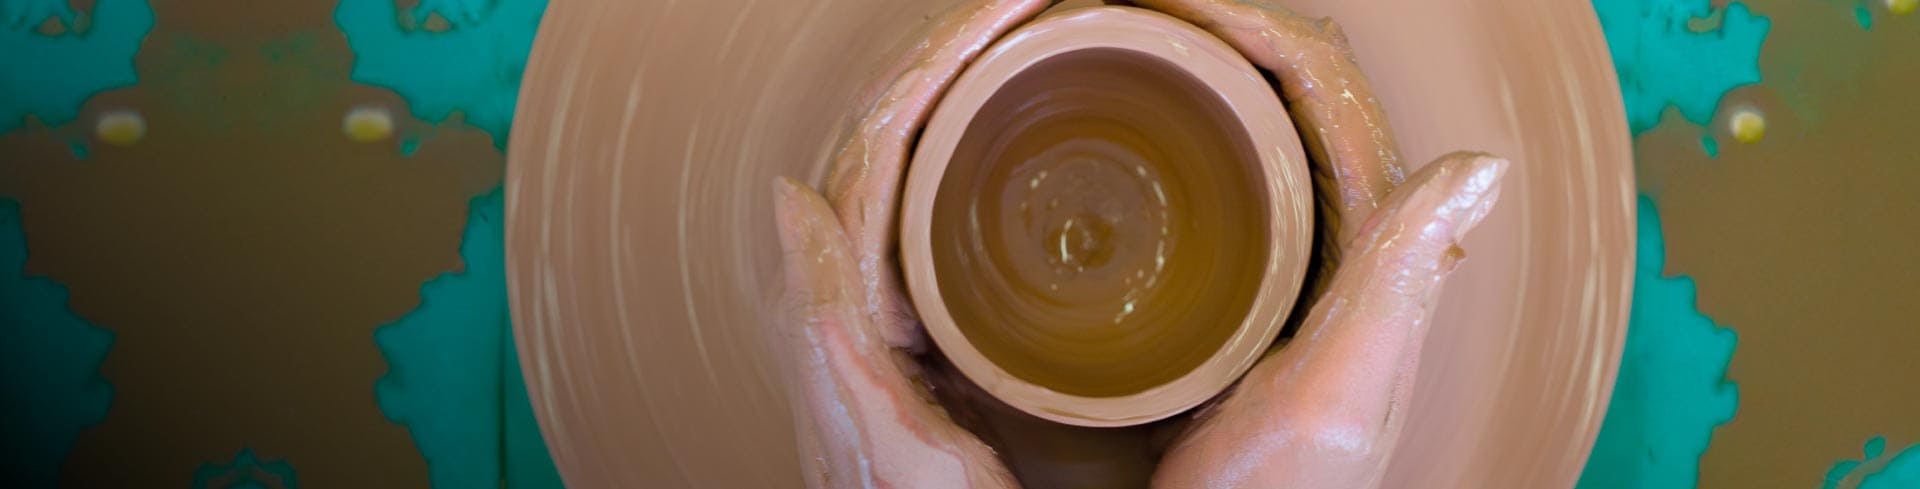 enTorno a la cerámica: un giro de creatividad